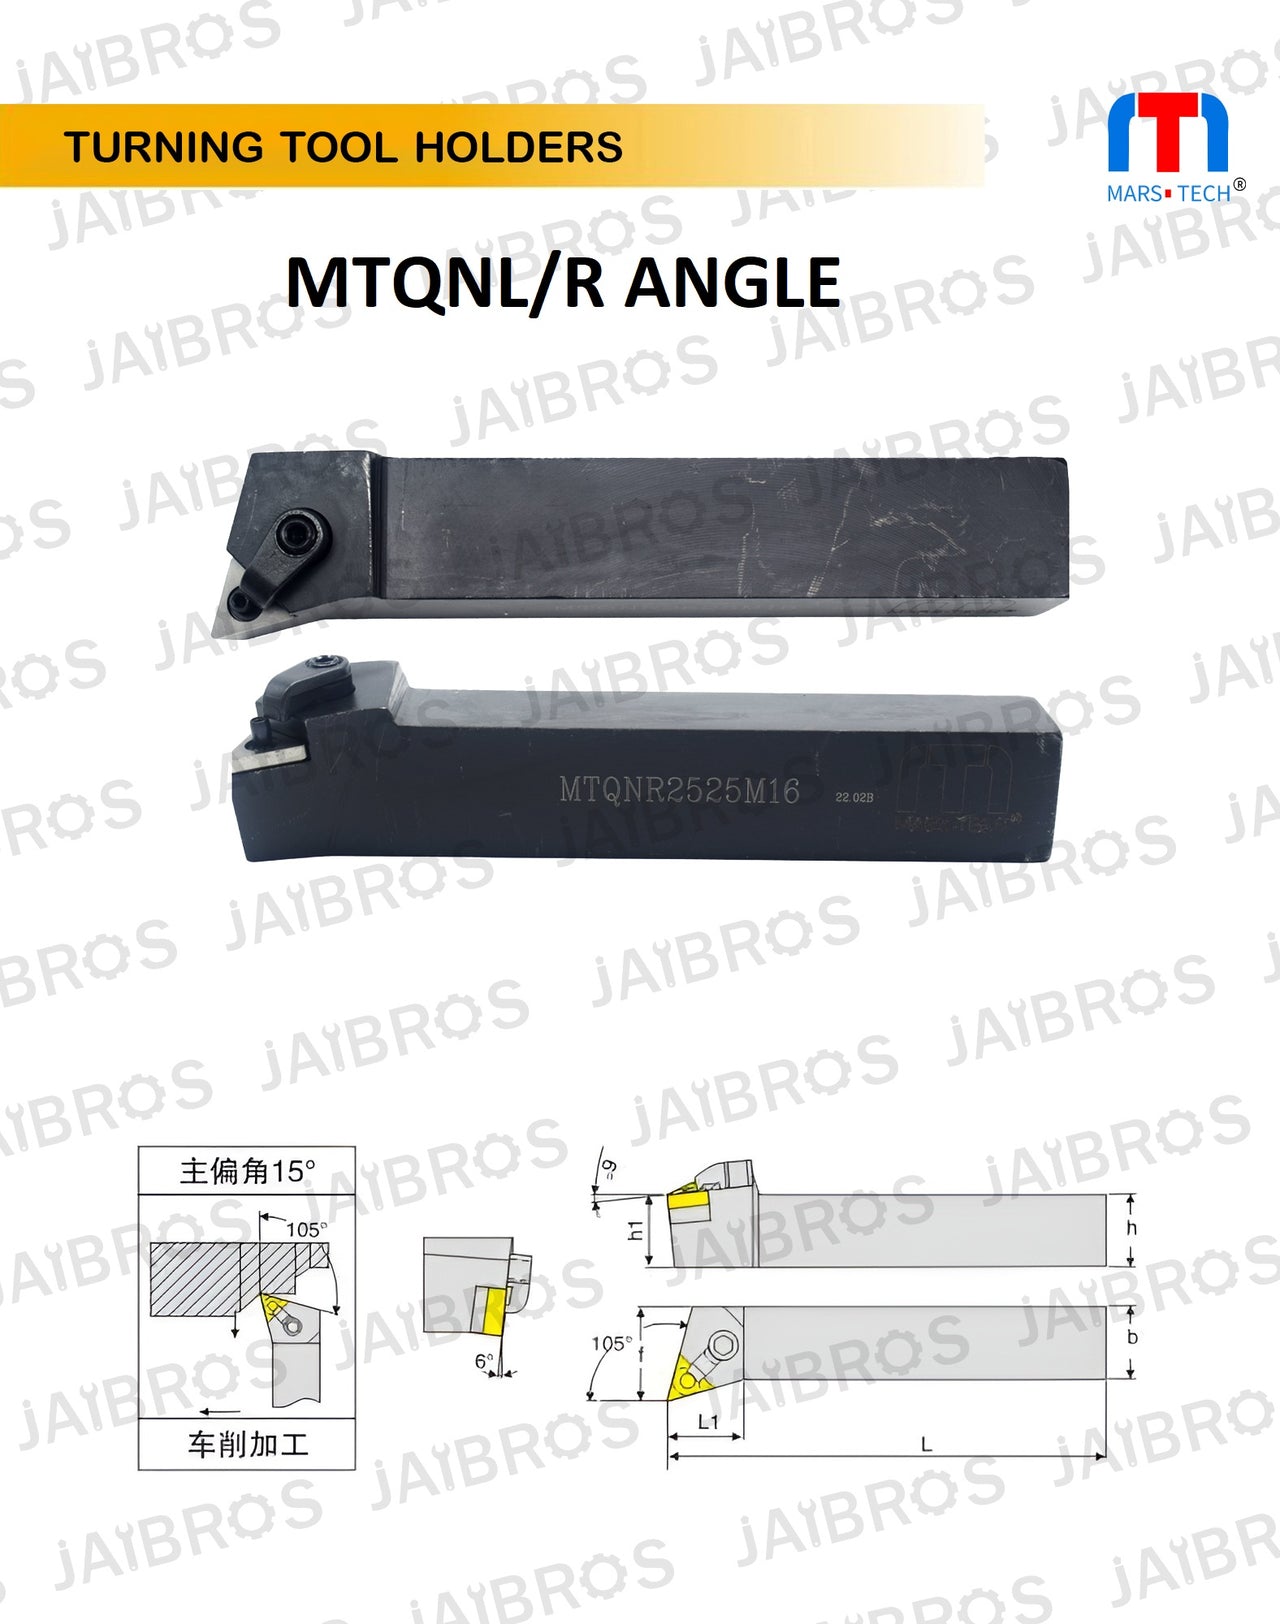 MTQNR/L TNMG16 holder 2525/2020 mm shank pack of 1